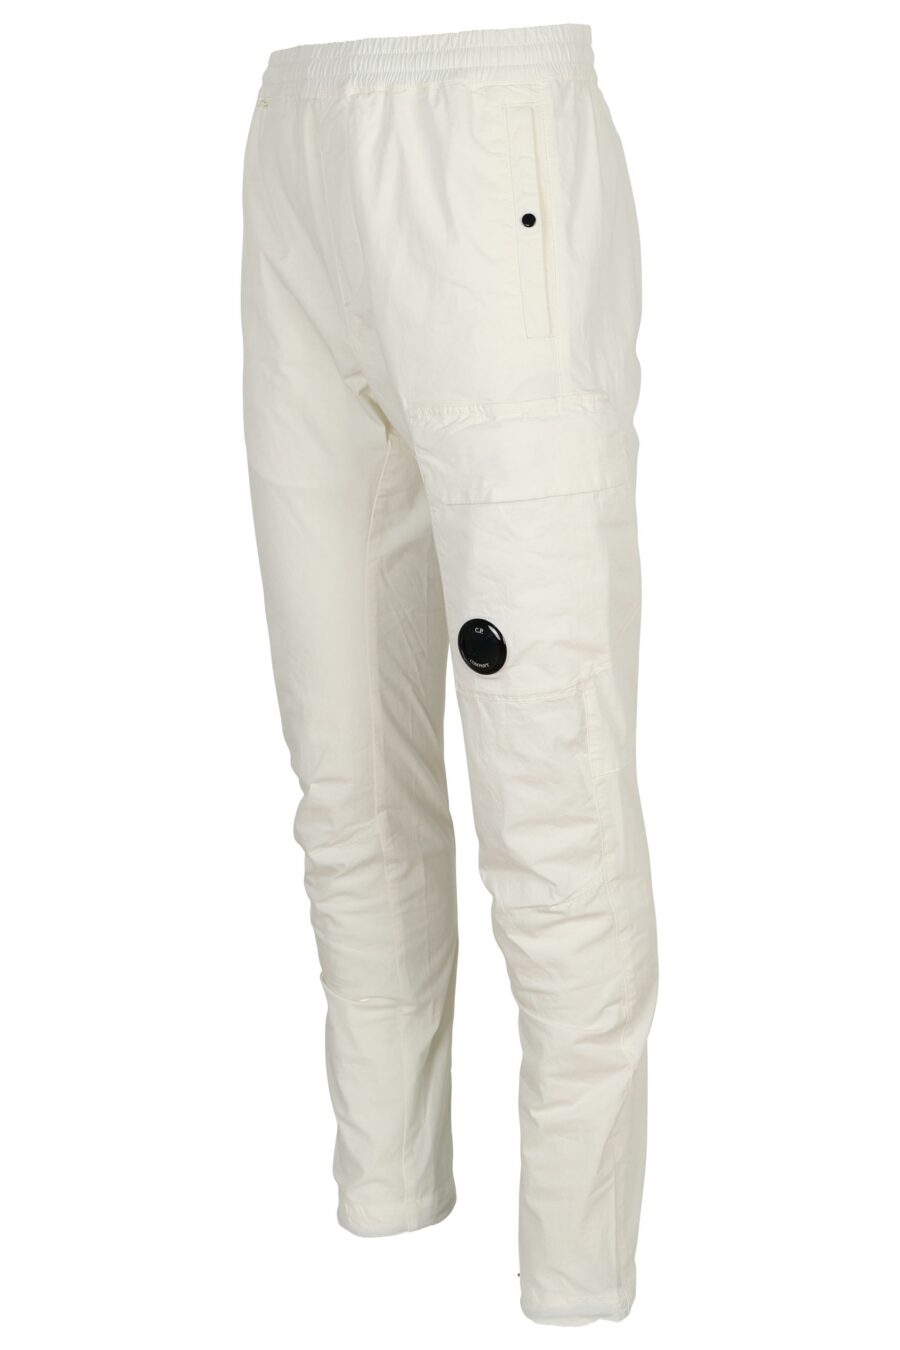 White cargo trousers with lens mini-logo - 7620943804751 1